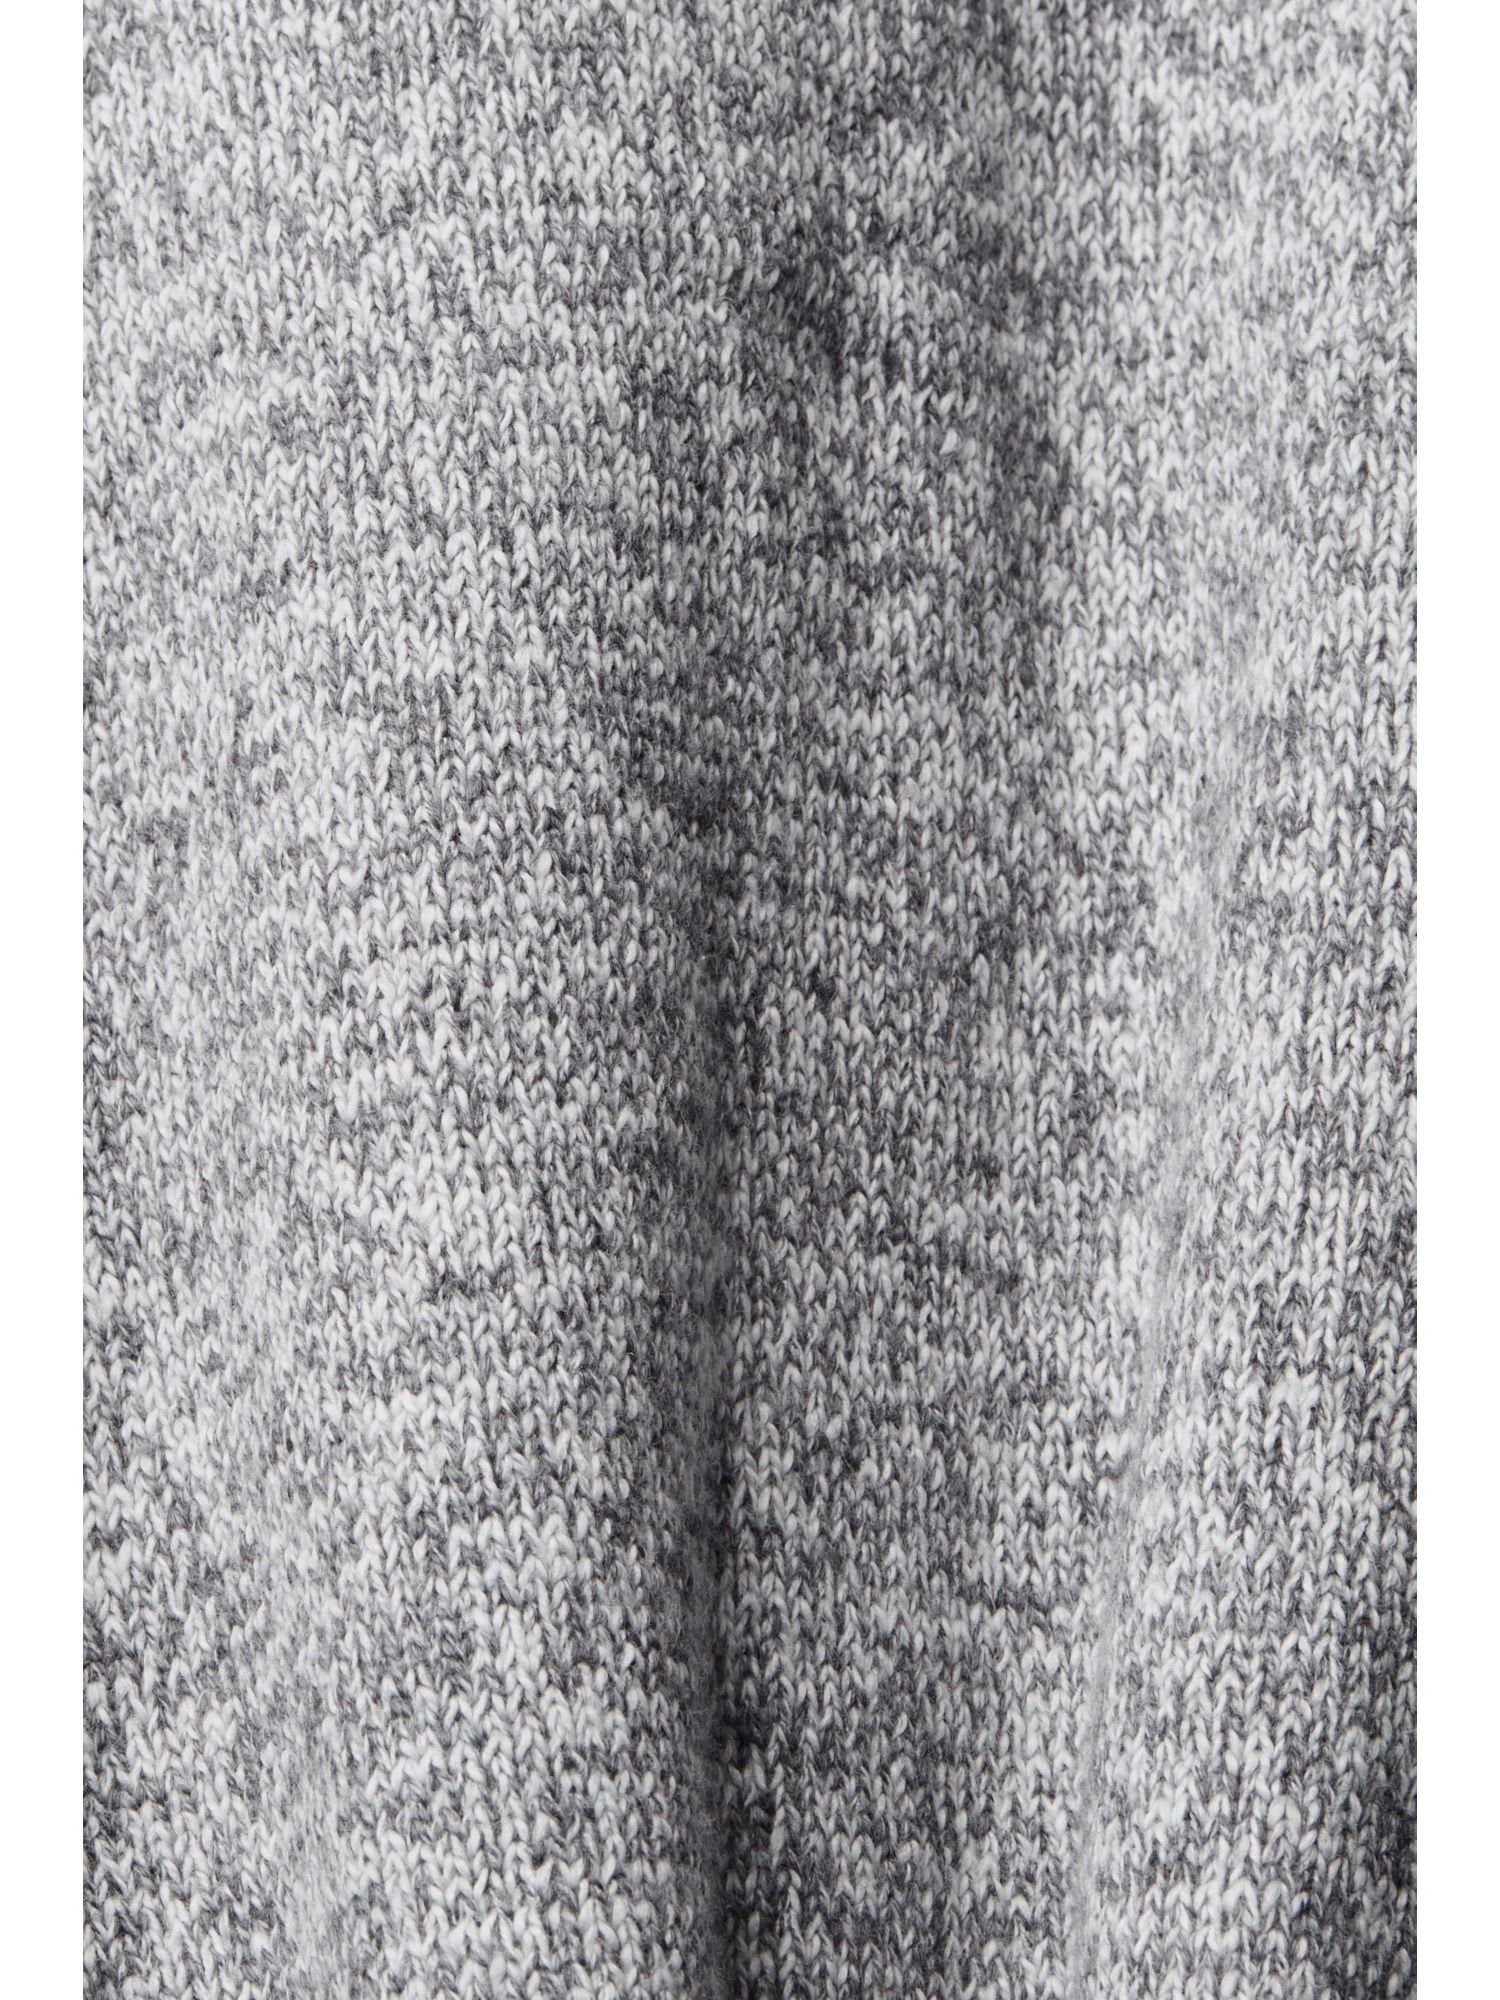 GREY MEDIUM Strick-Cardigan mit V-Ausschnitt-Pullover Knöpfen Esprit